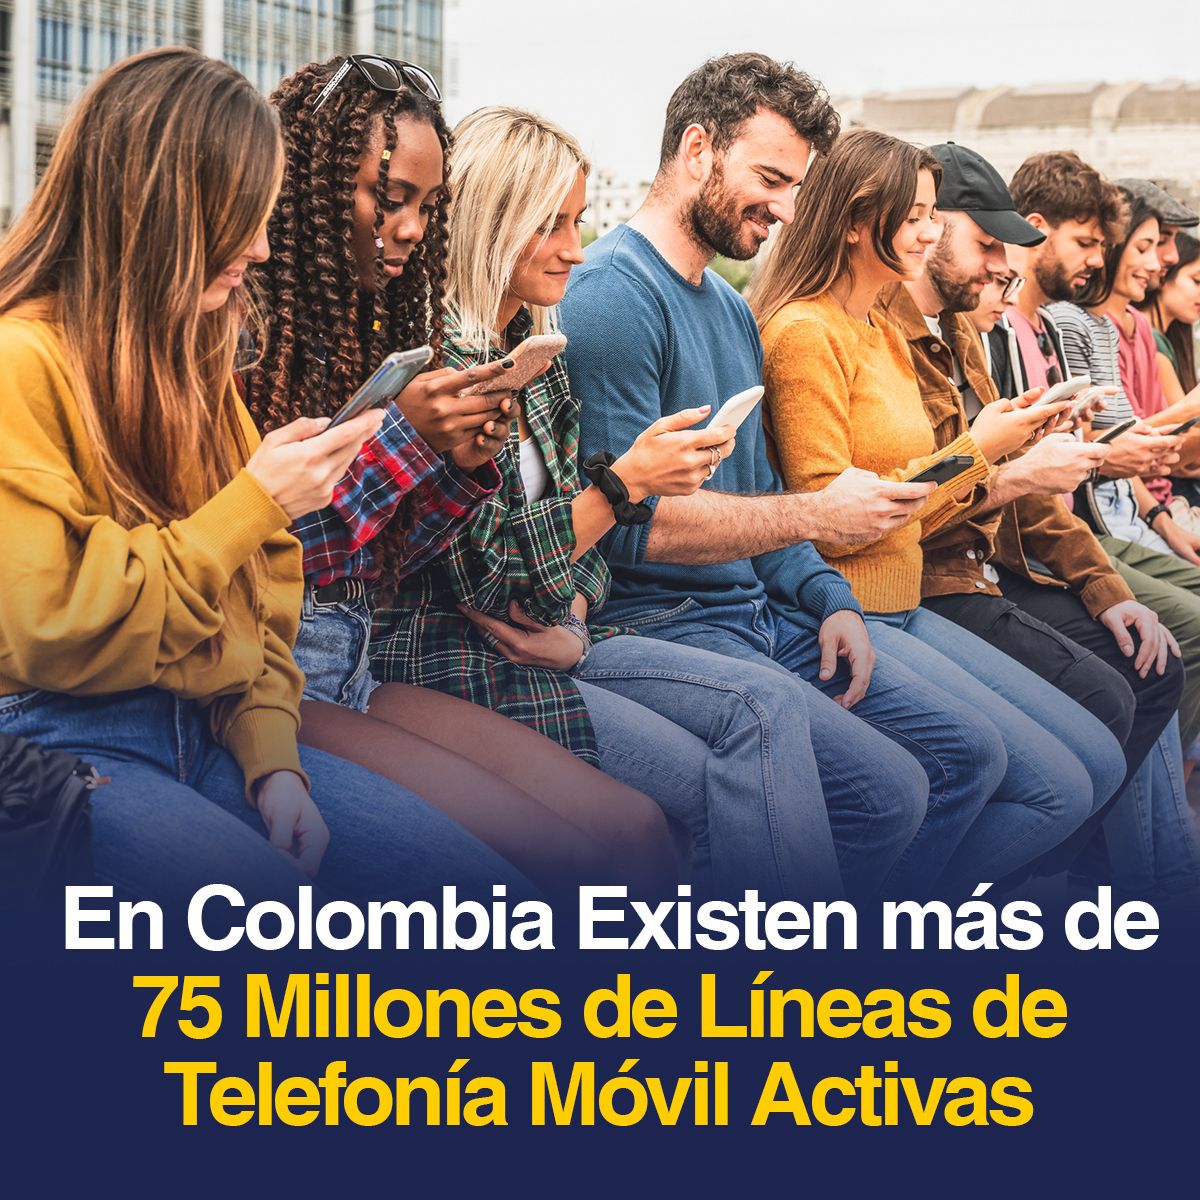 En Colombia Existen más de 75 Millones de Líneas de Telefonía Móvil Activas